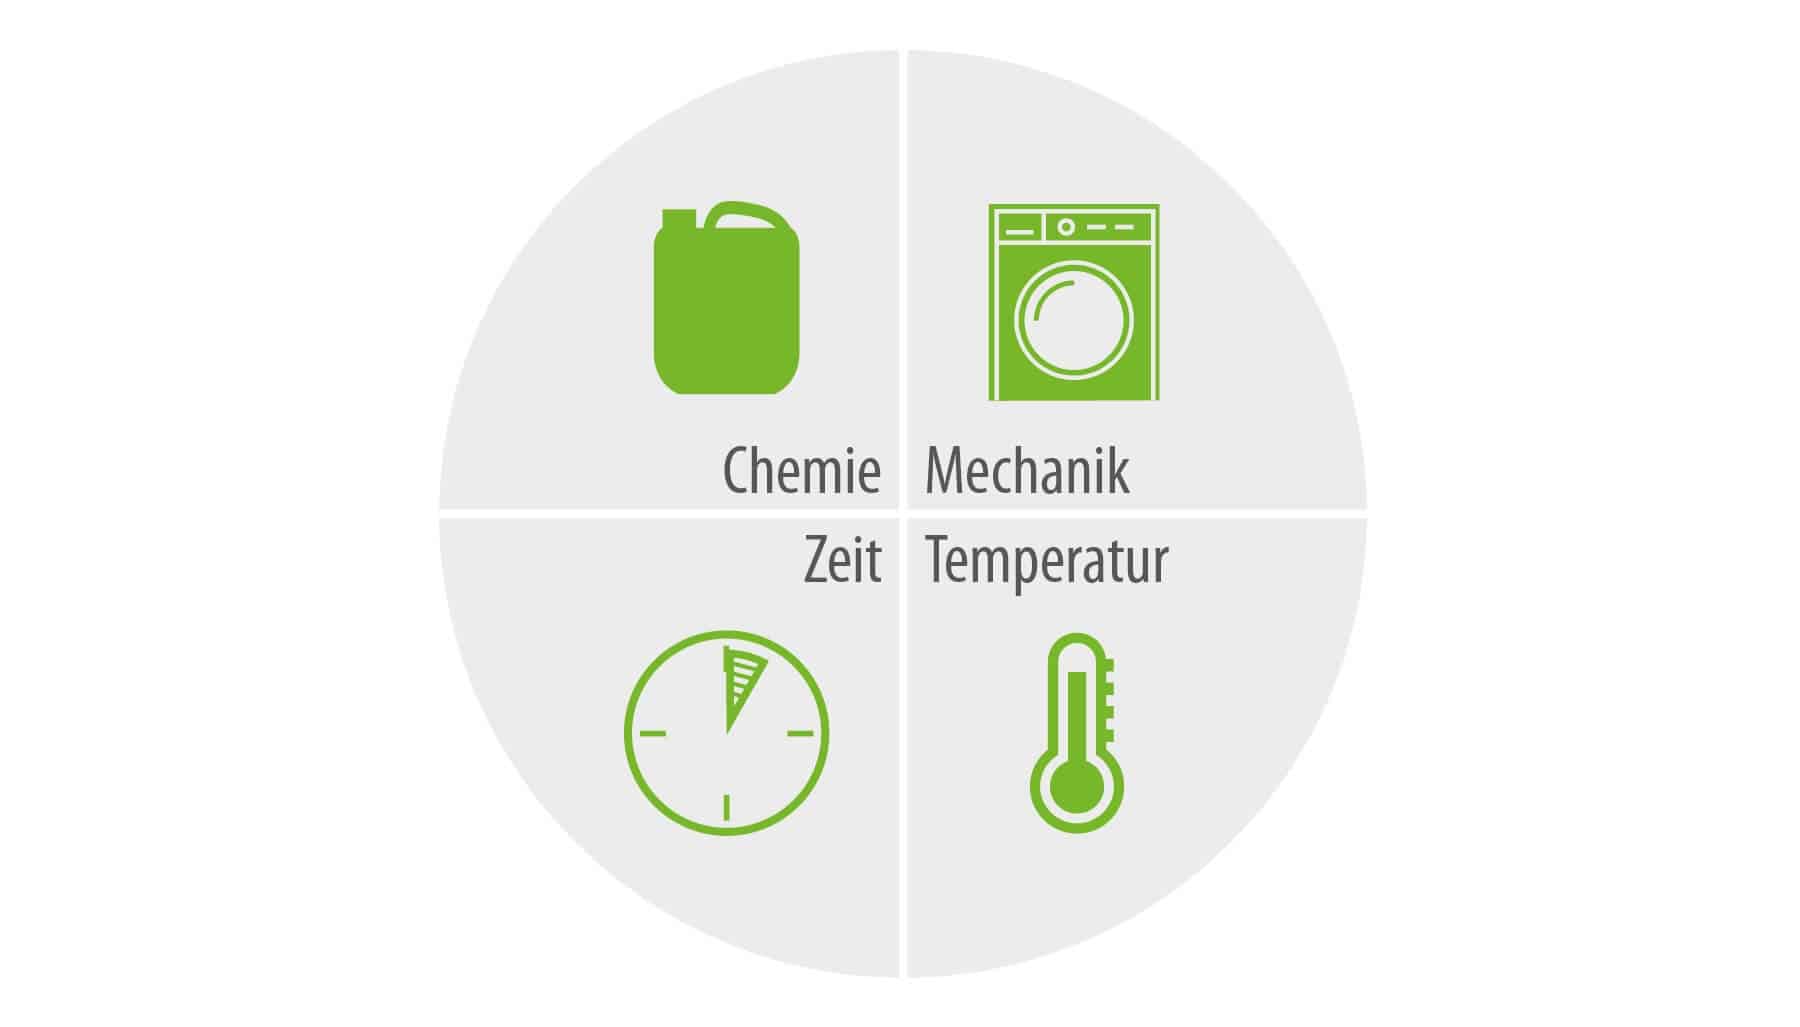 Ein Kreis mit 4 Symbolen und den Wörtern Chemie, Mechanik, Zeit und Temperatur